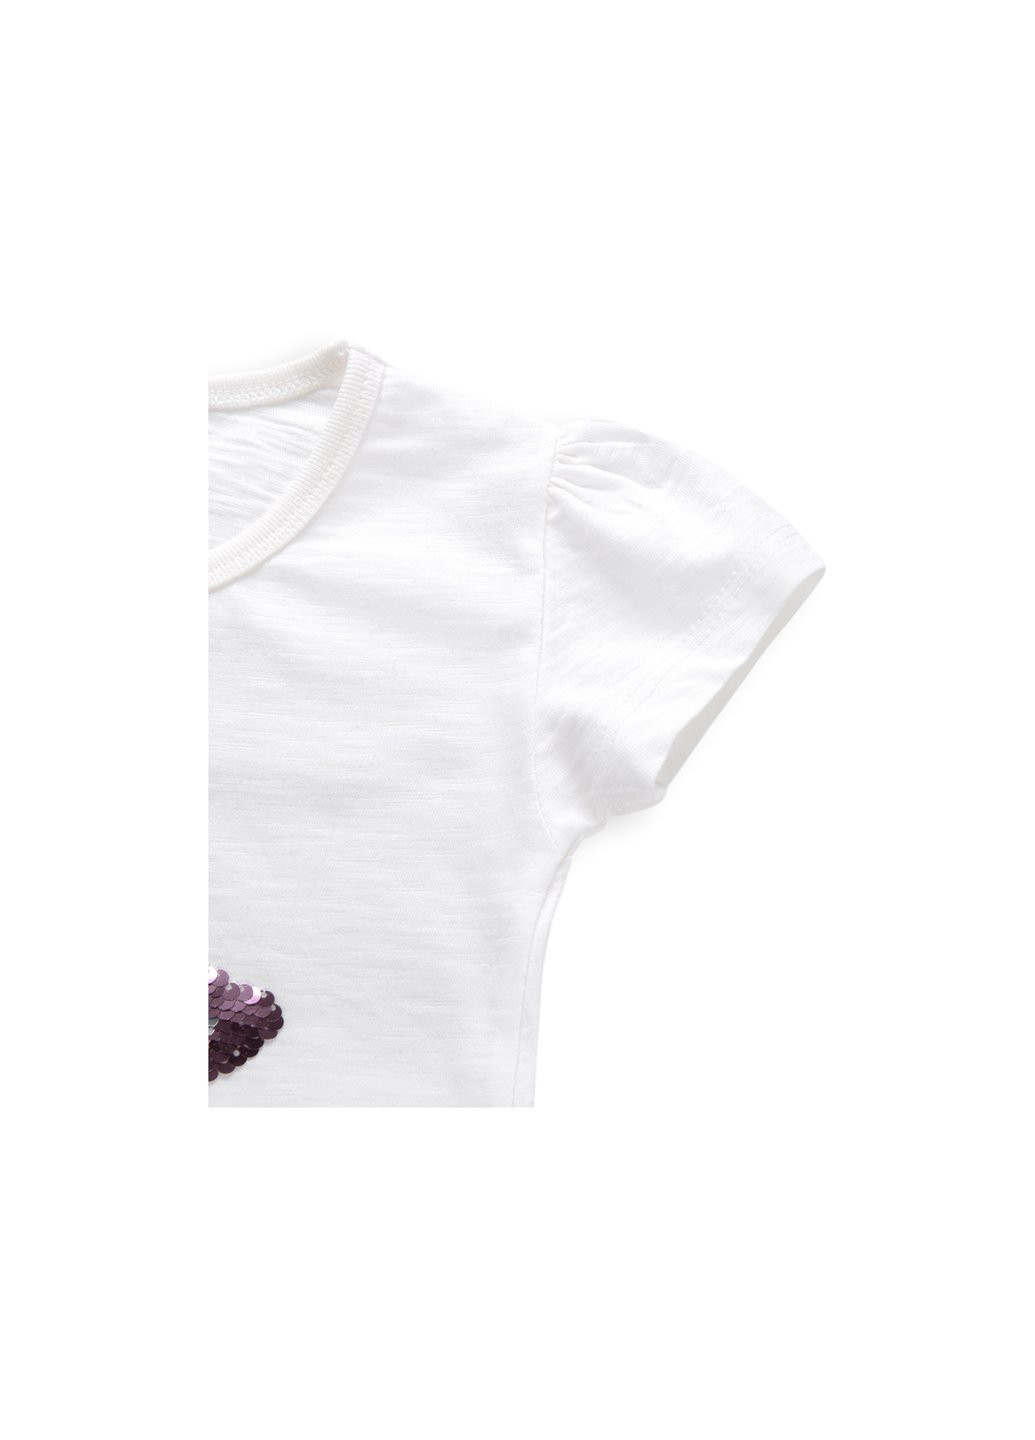 Комбинированная футболка детская со звездой из пайеток (8752-86g-beige) Breeze